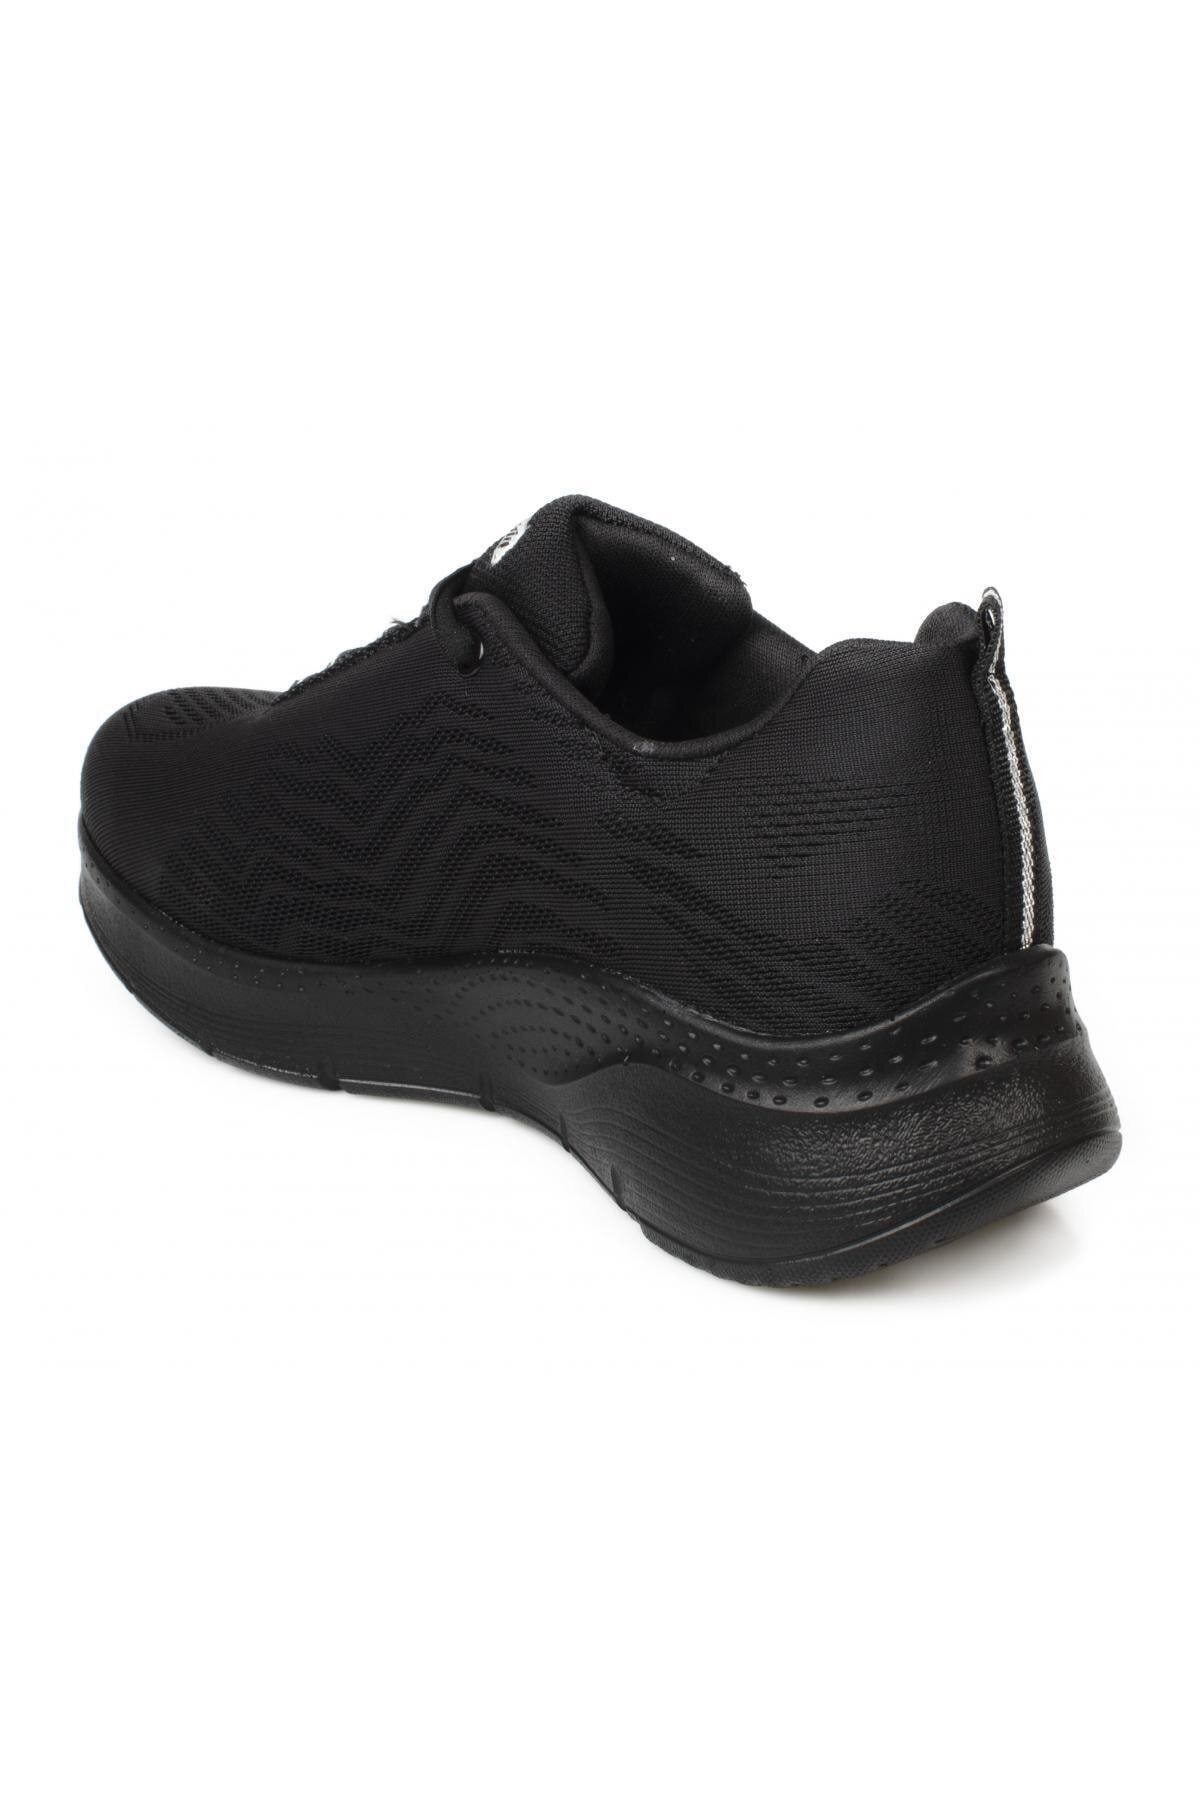 Mammamia Kadın Ayakkabı D21KA-570 1383 Siyah